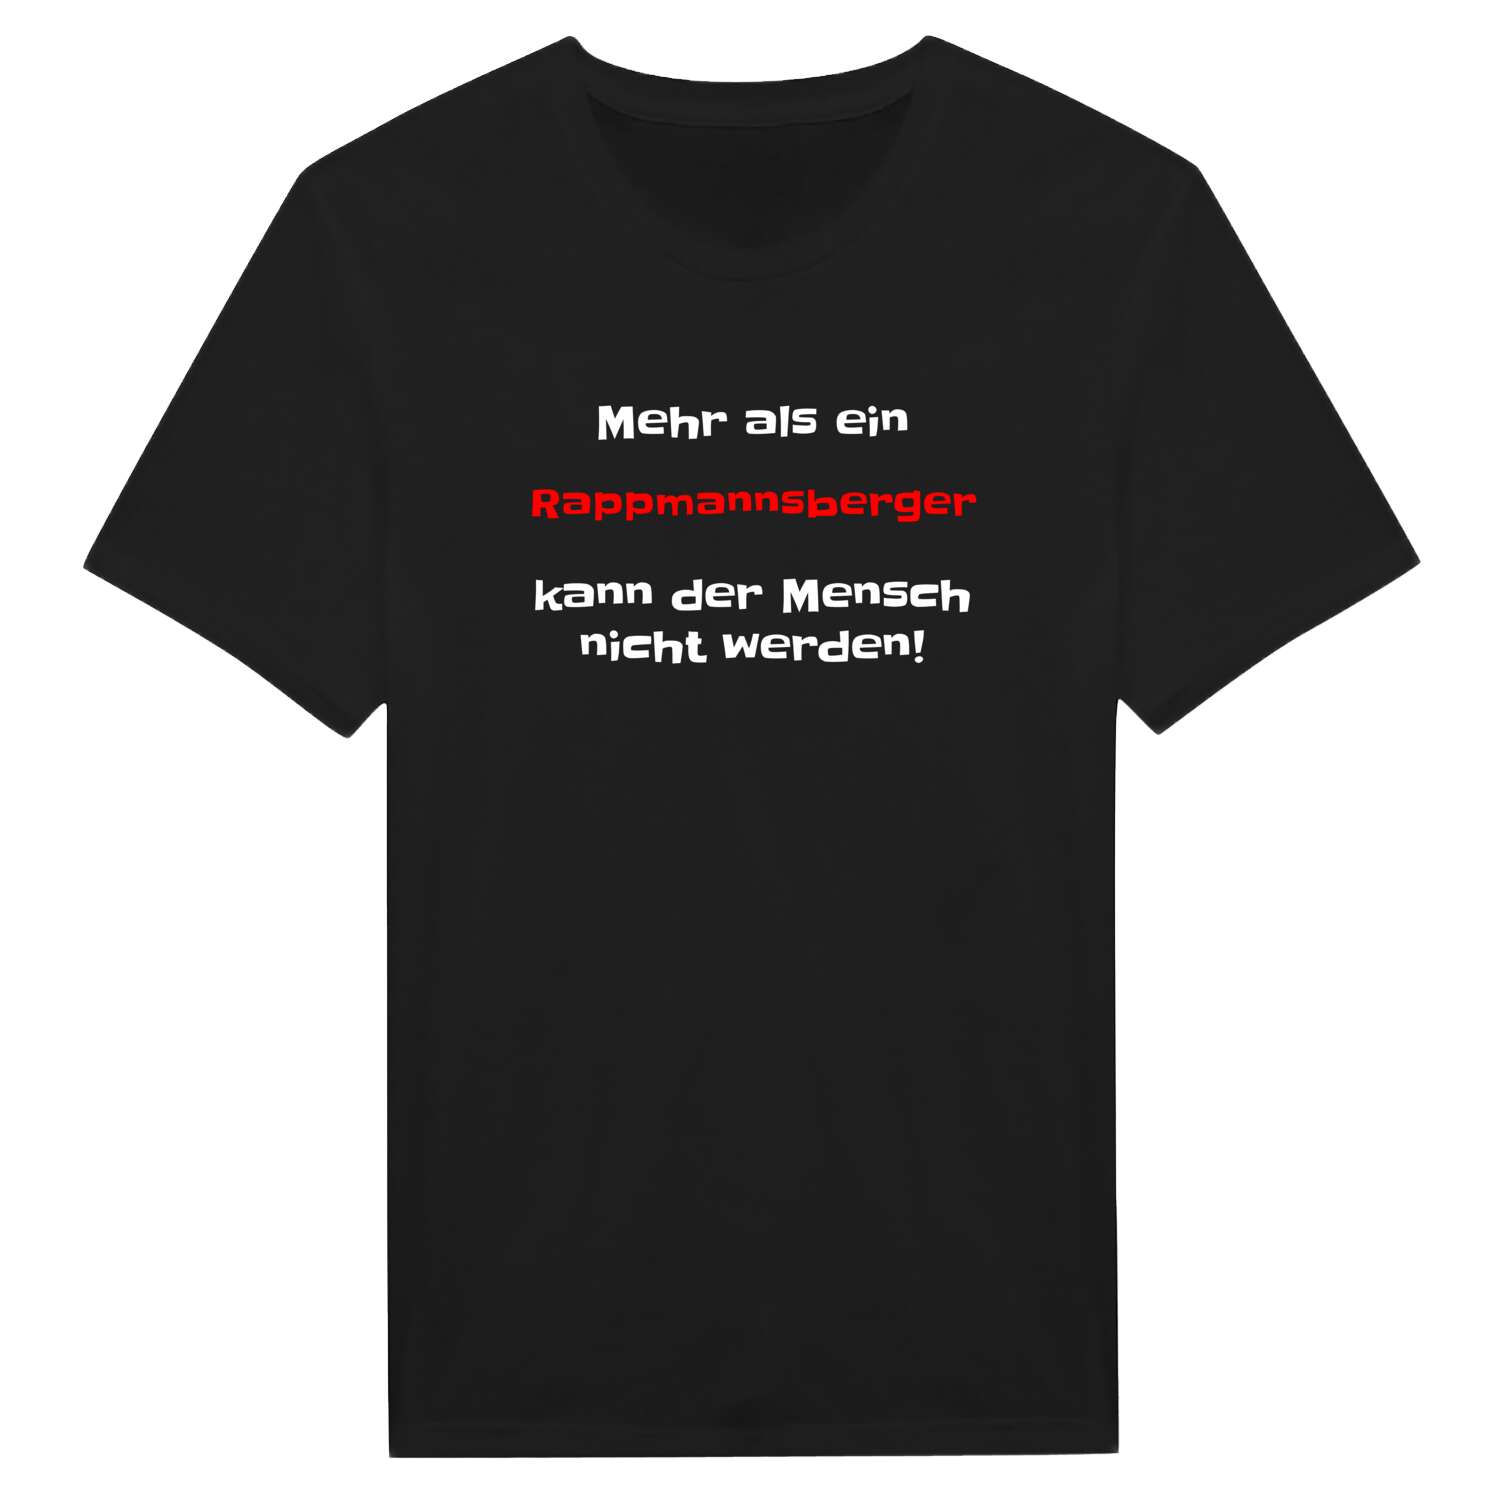 Rappmannsberg T-Shirt »Mehr als ein«